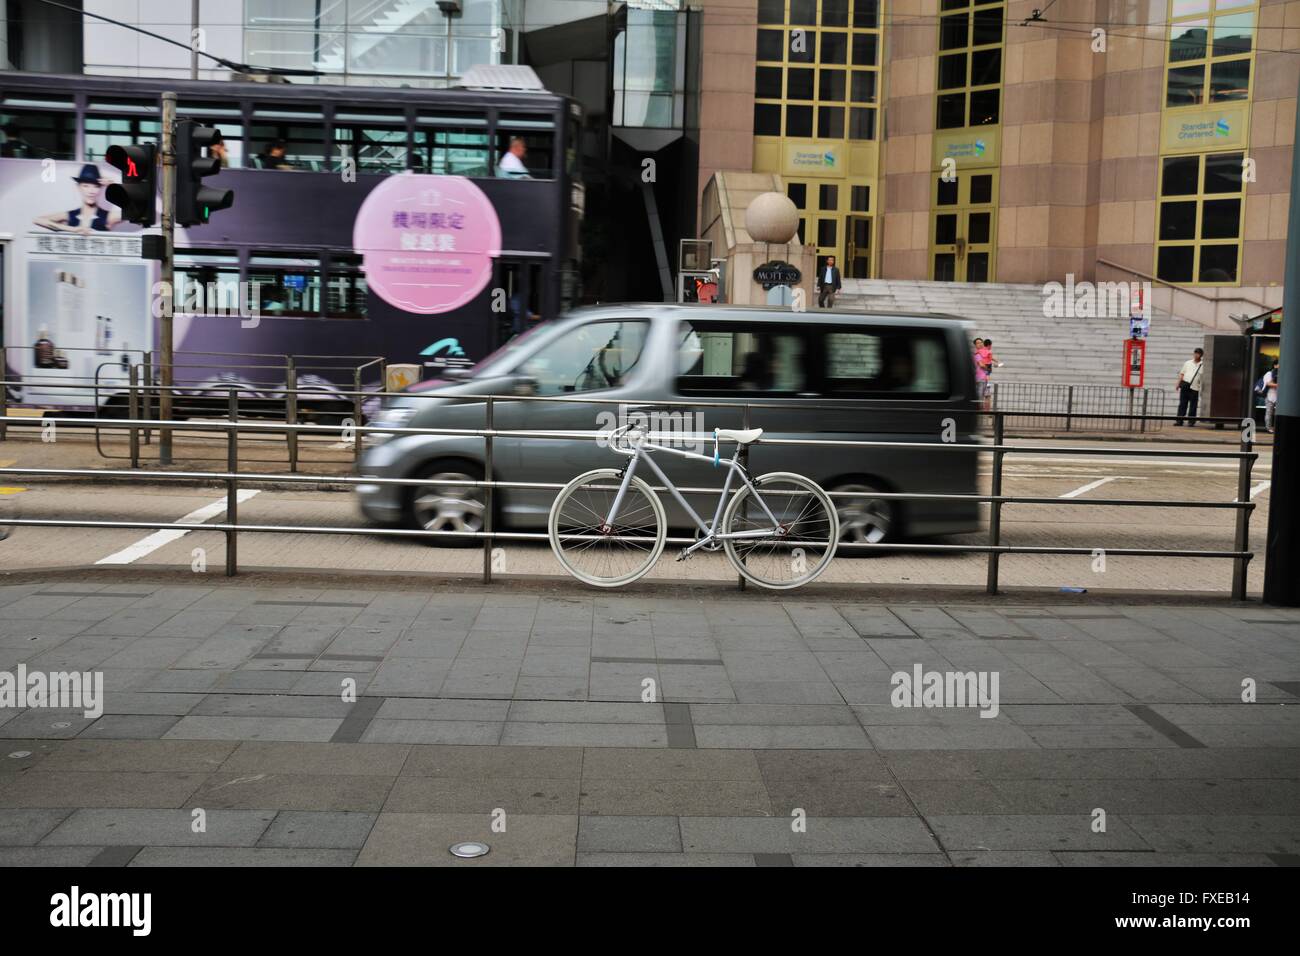 Parcheggio biciclette Bianchi e un bus in movimento in background. Foto Stock